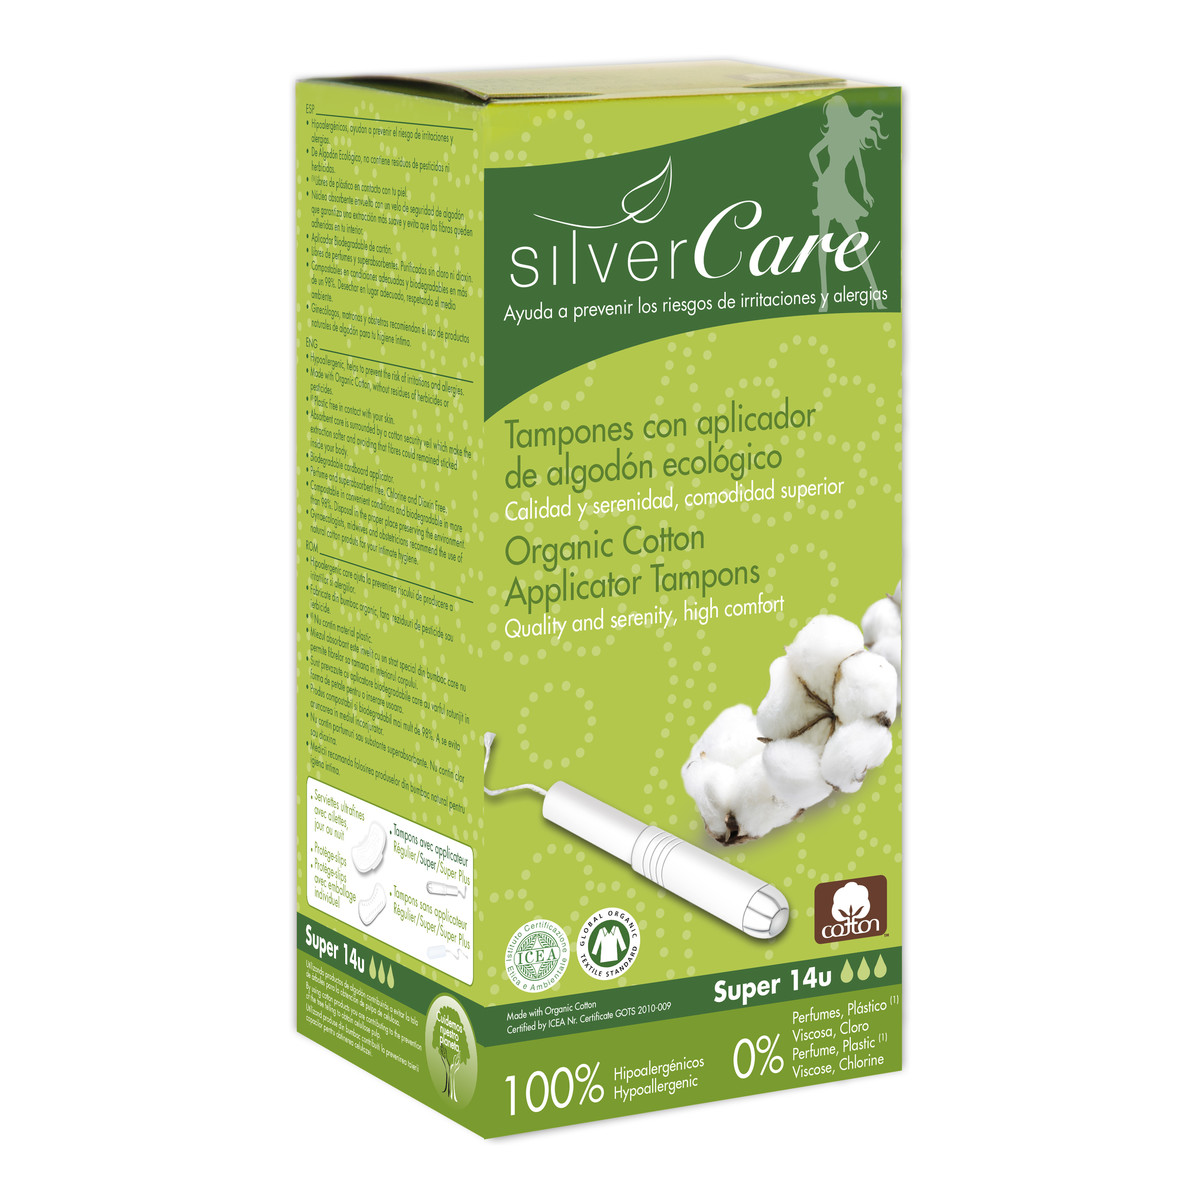 MASMI Silver Care Organiczne bawełniane tampony Super z aplikatorem 100% bawełny organicznej 14szt